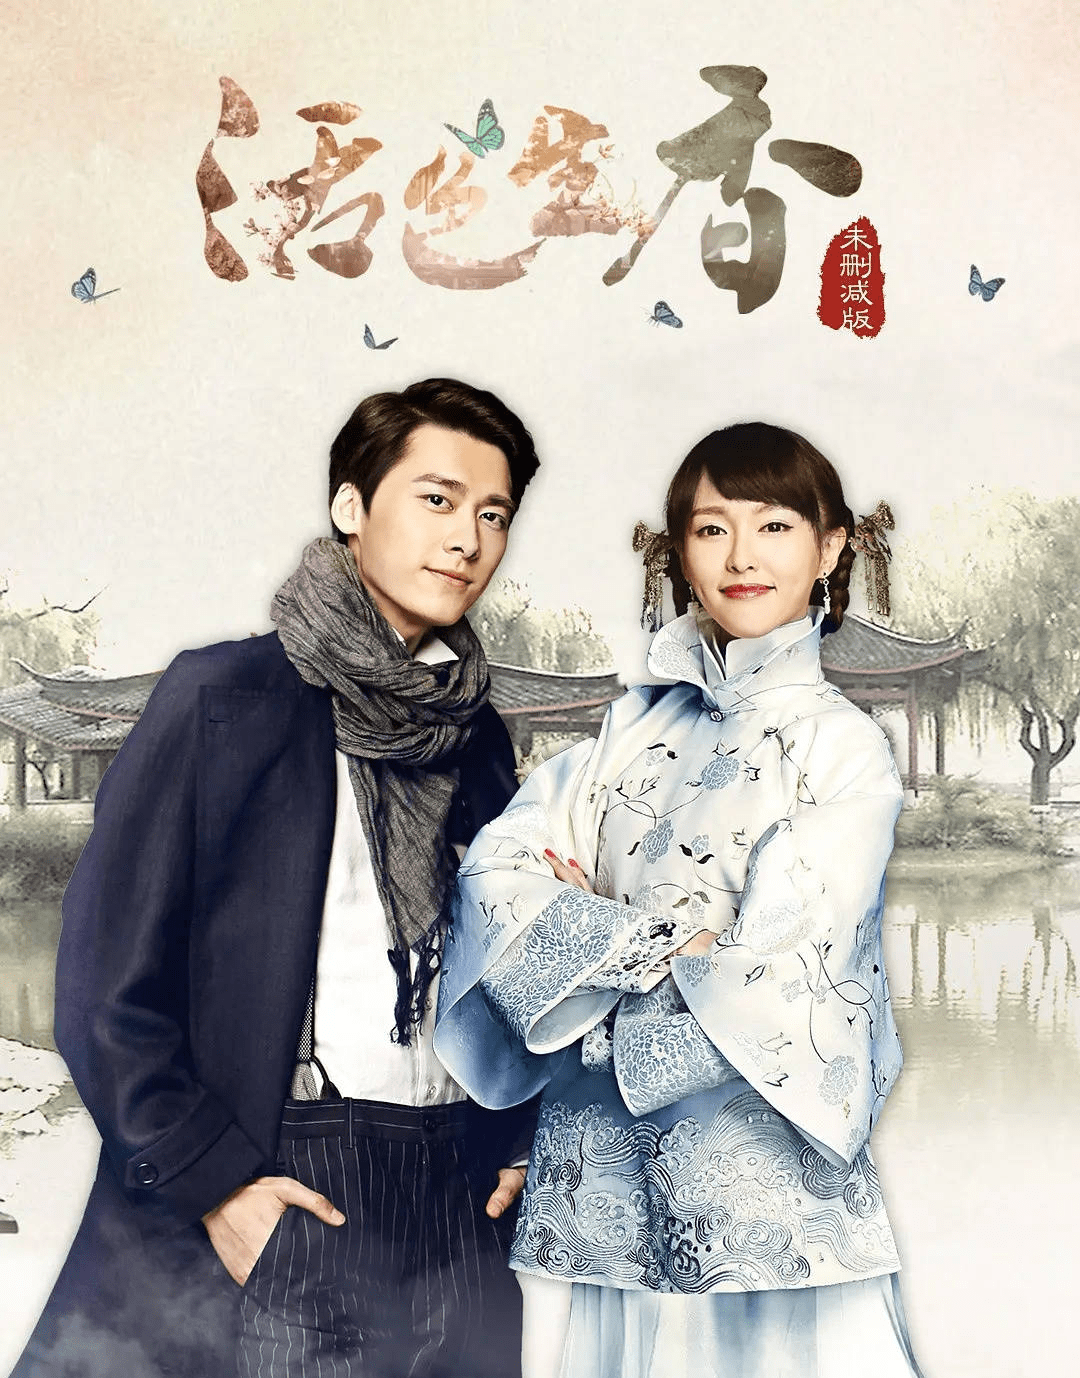 李易峰和唐嫣主演的活色生香已走出国门于4月7日在韩国首映